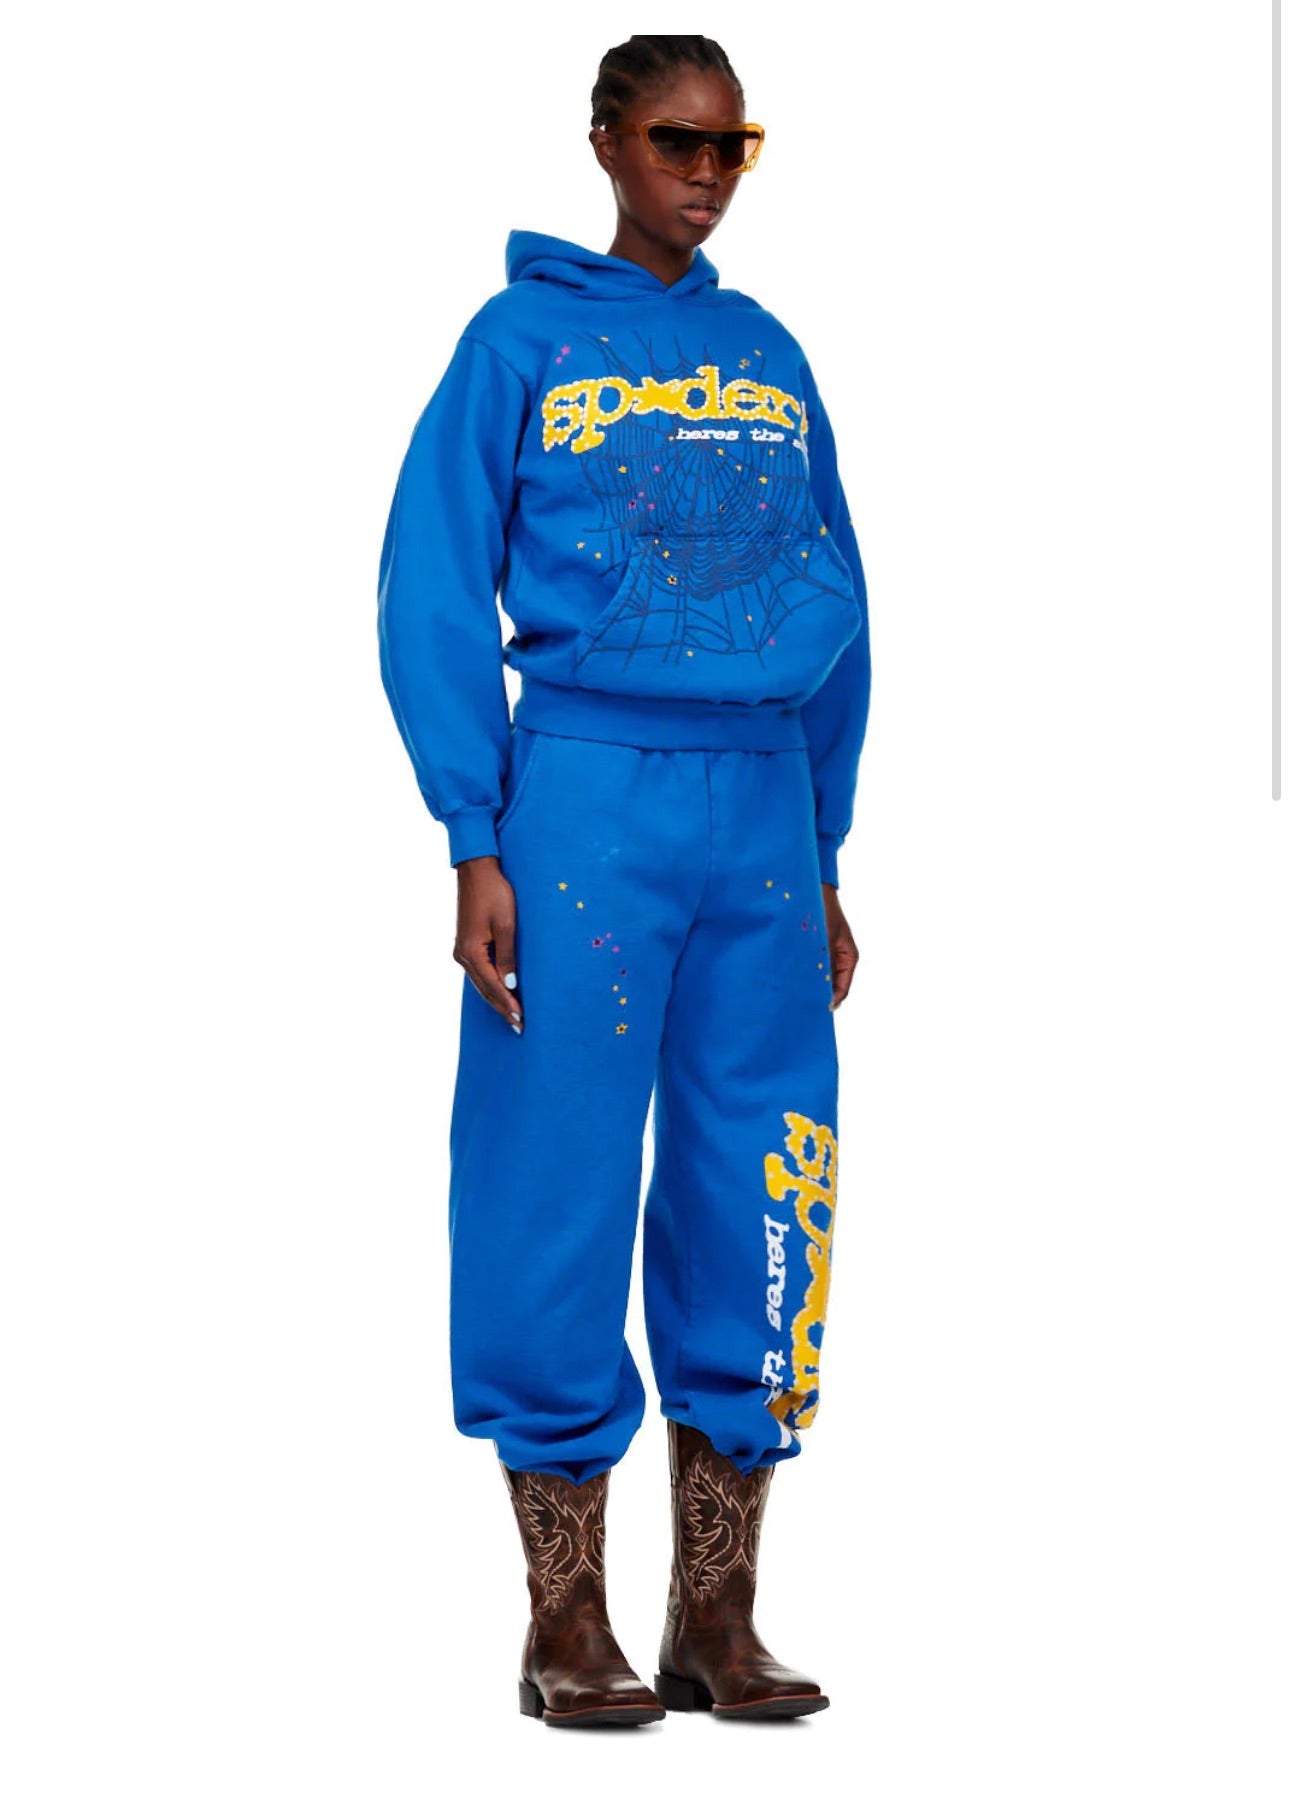 Sp5der Sweatpants 'TC Blue